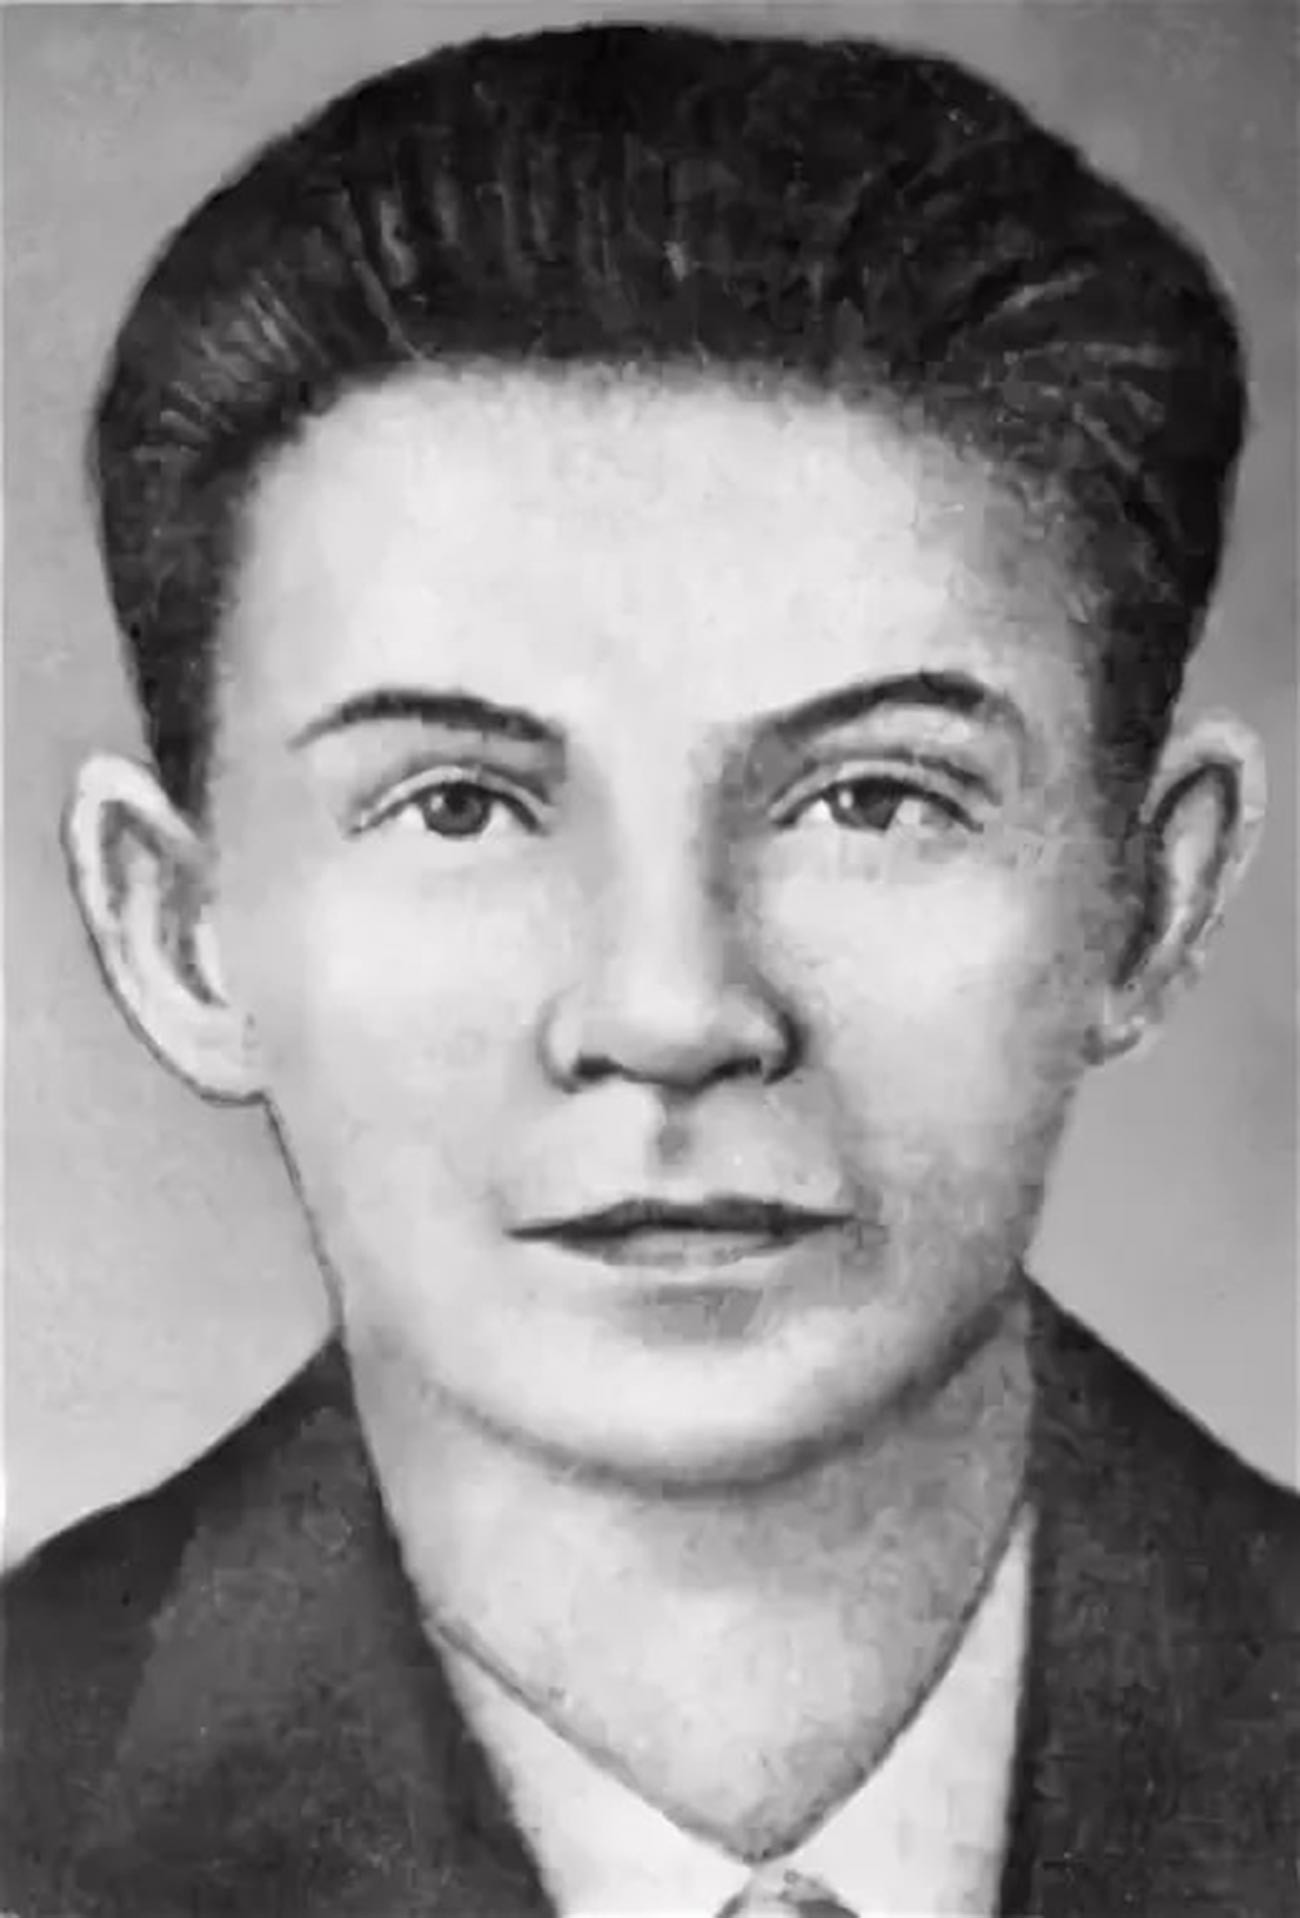 Heroj Sovjetskog Saveza V. I. Jermak. 19. srpnja 1943. svojim je tijelom zatvorio puškarnicu neprijateljskog bunkera. 